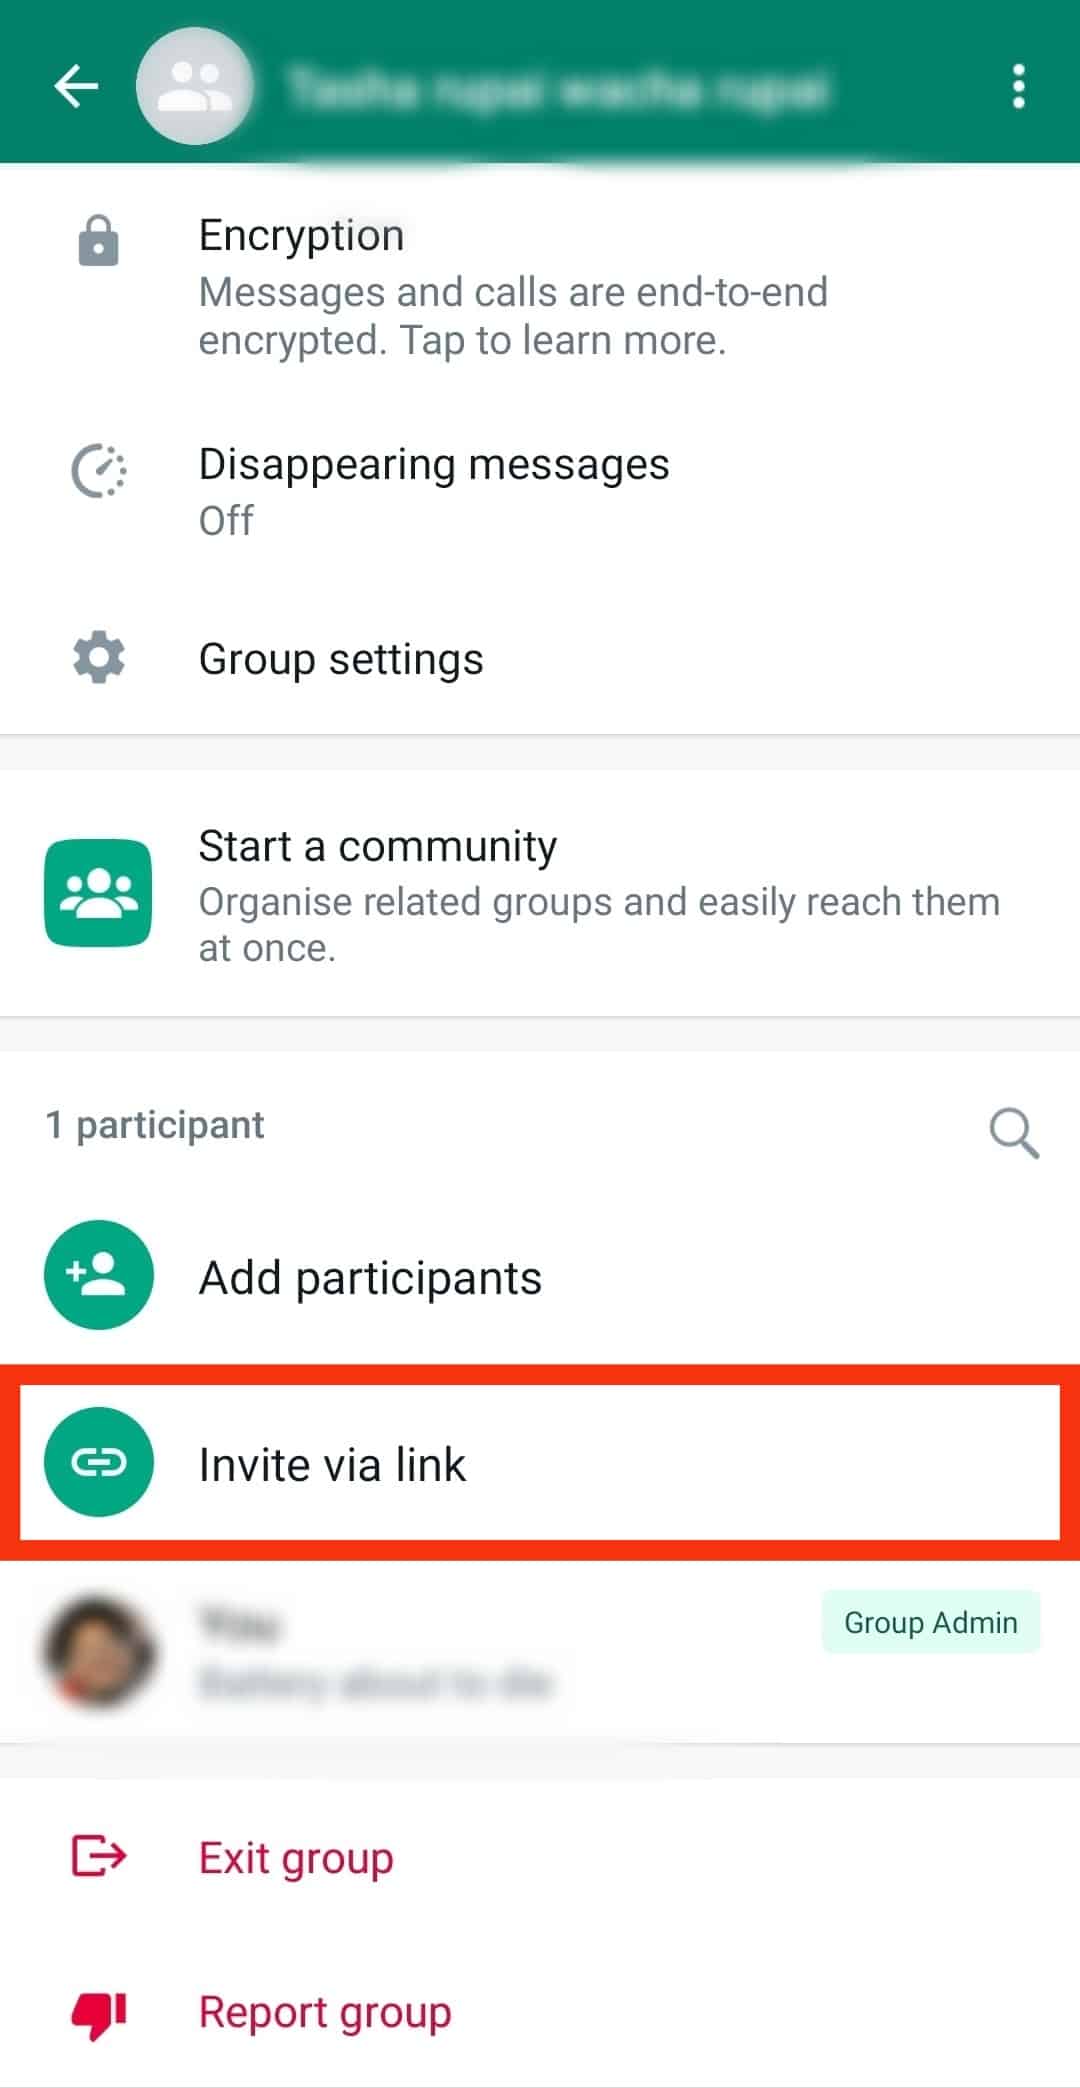 Tap The Invite Via Link Button